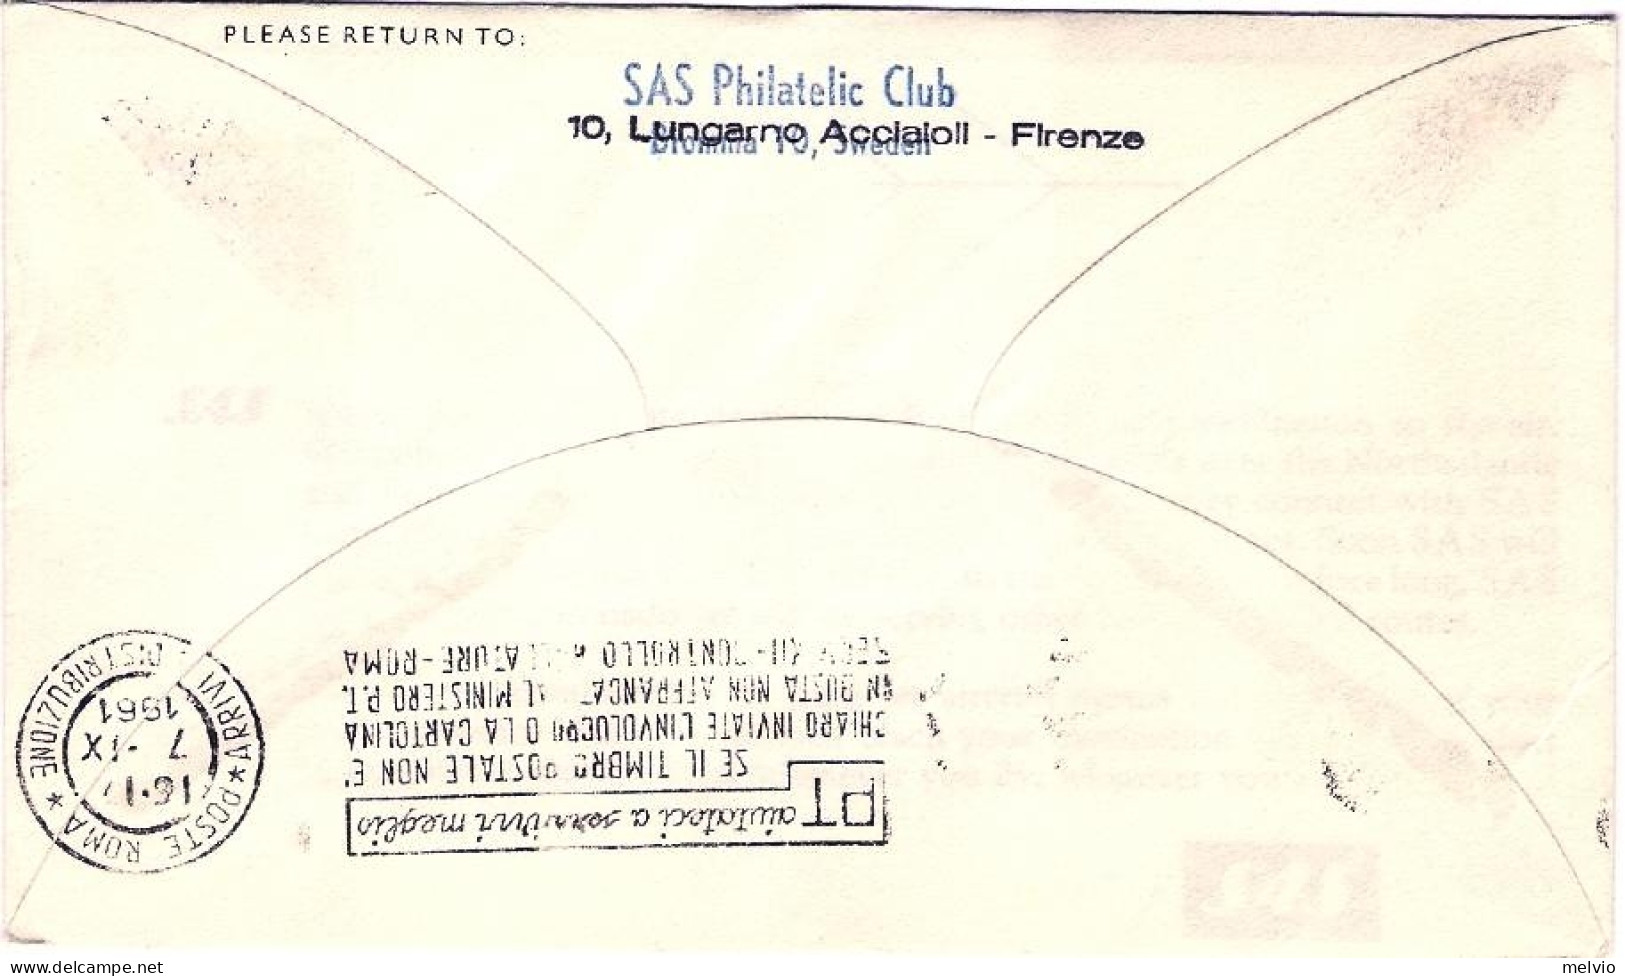 1961-Svizzera SAS I^volo Zurigo Roma Del 7 Settembre - Premiers Vols